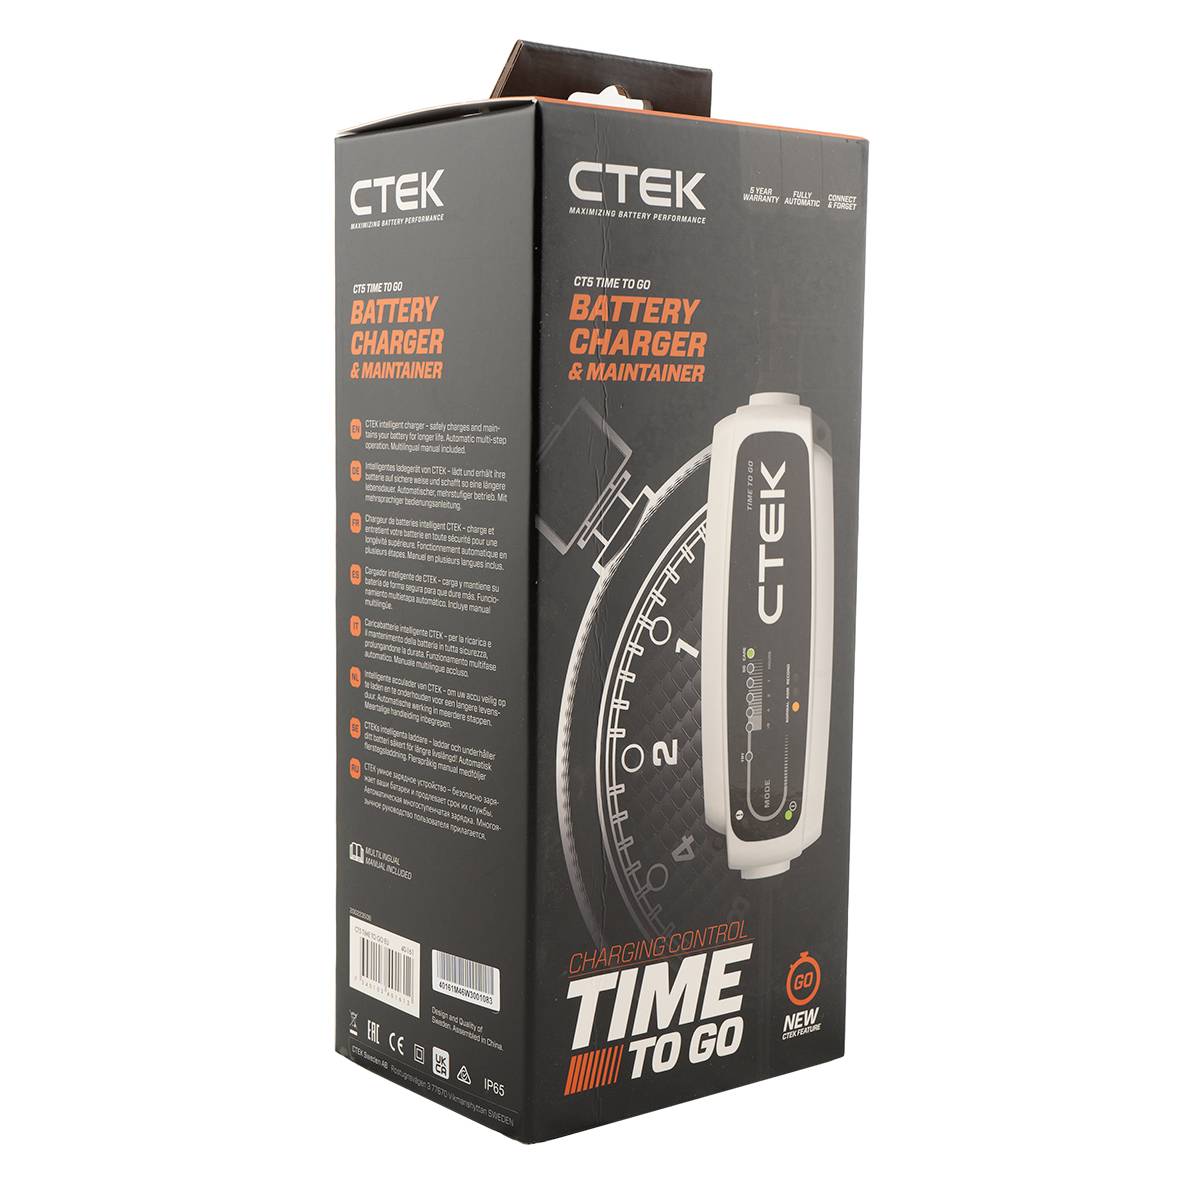 Ctek Chargeur de batterie CT5 TIME TO GO